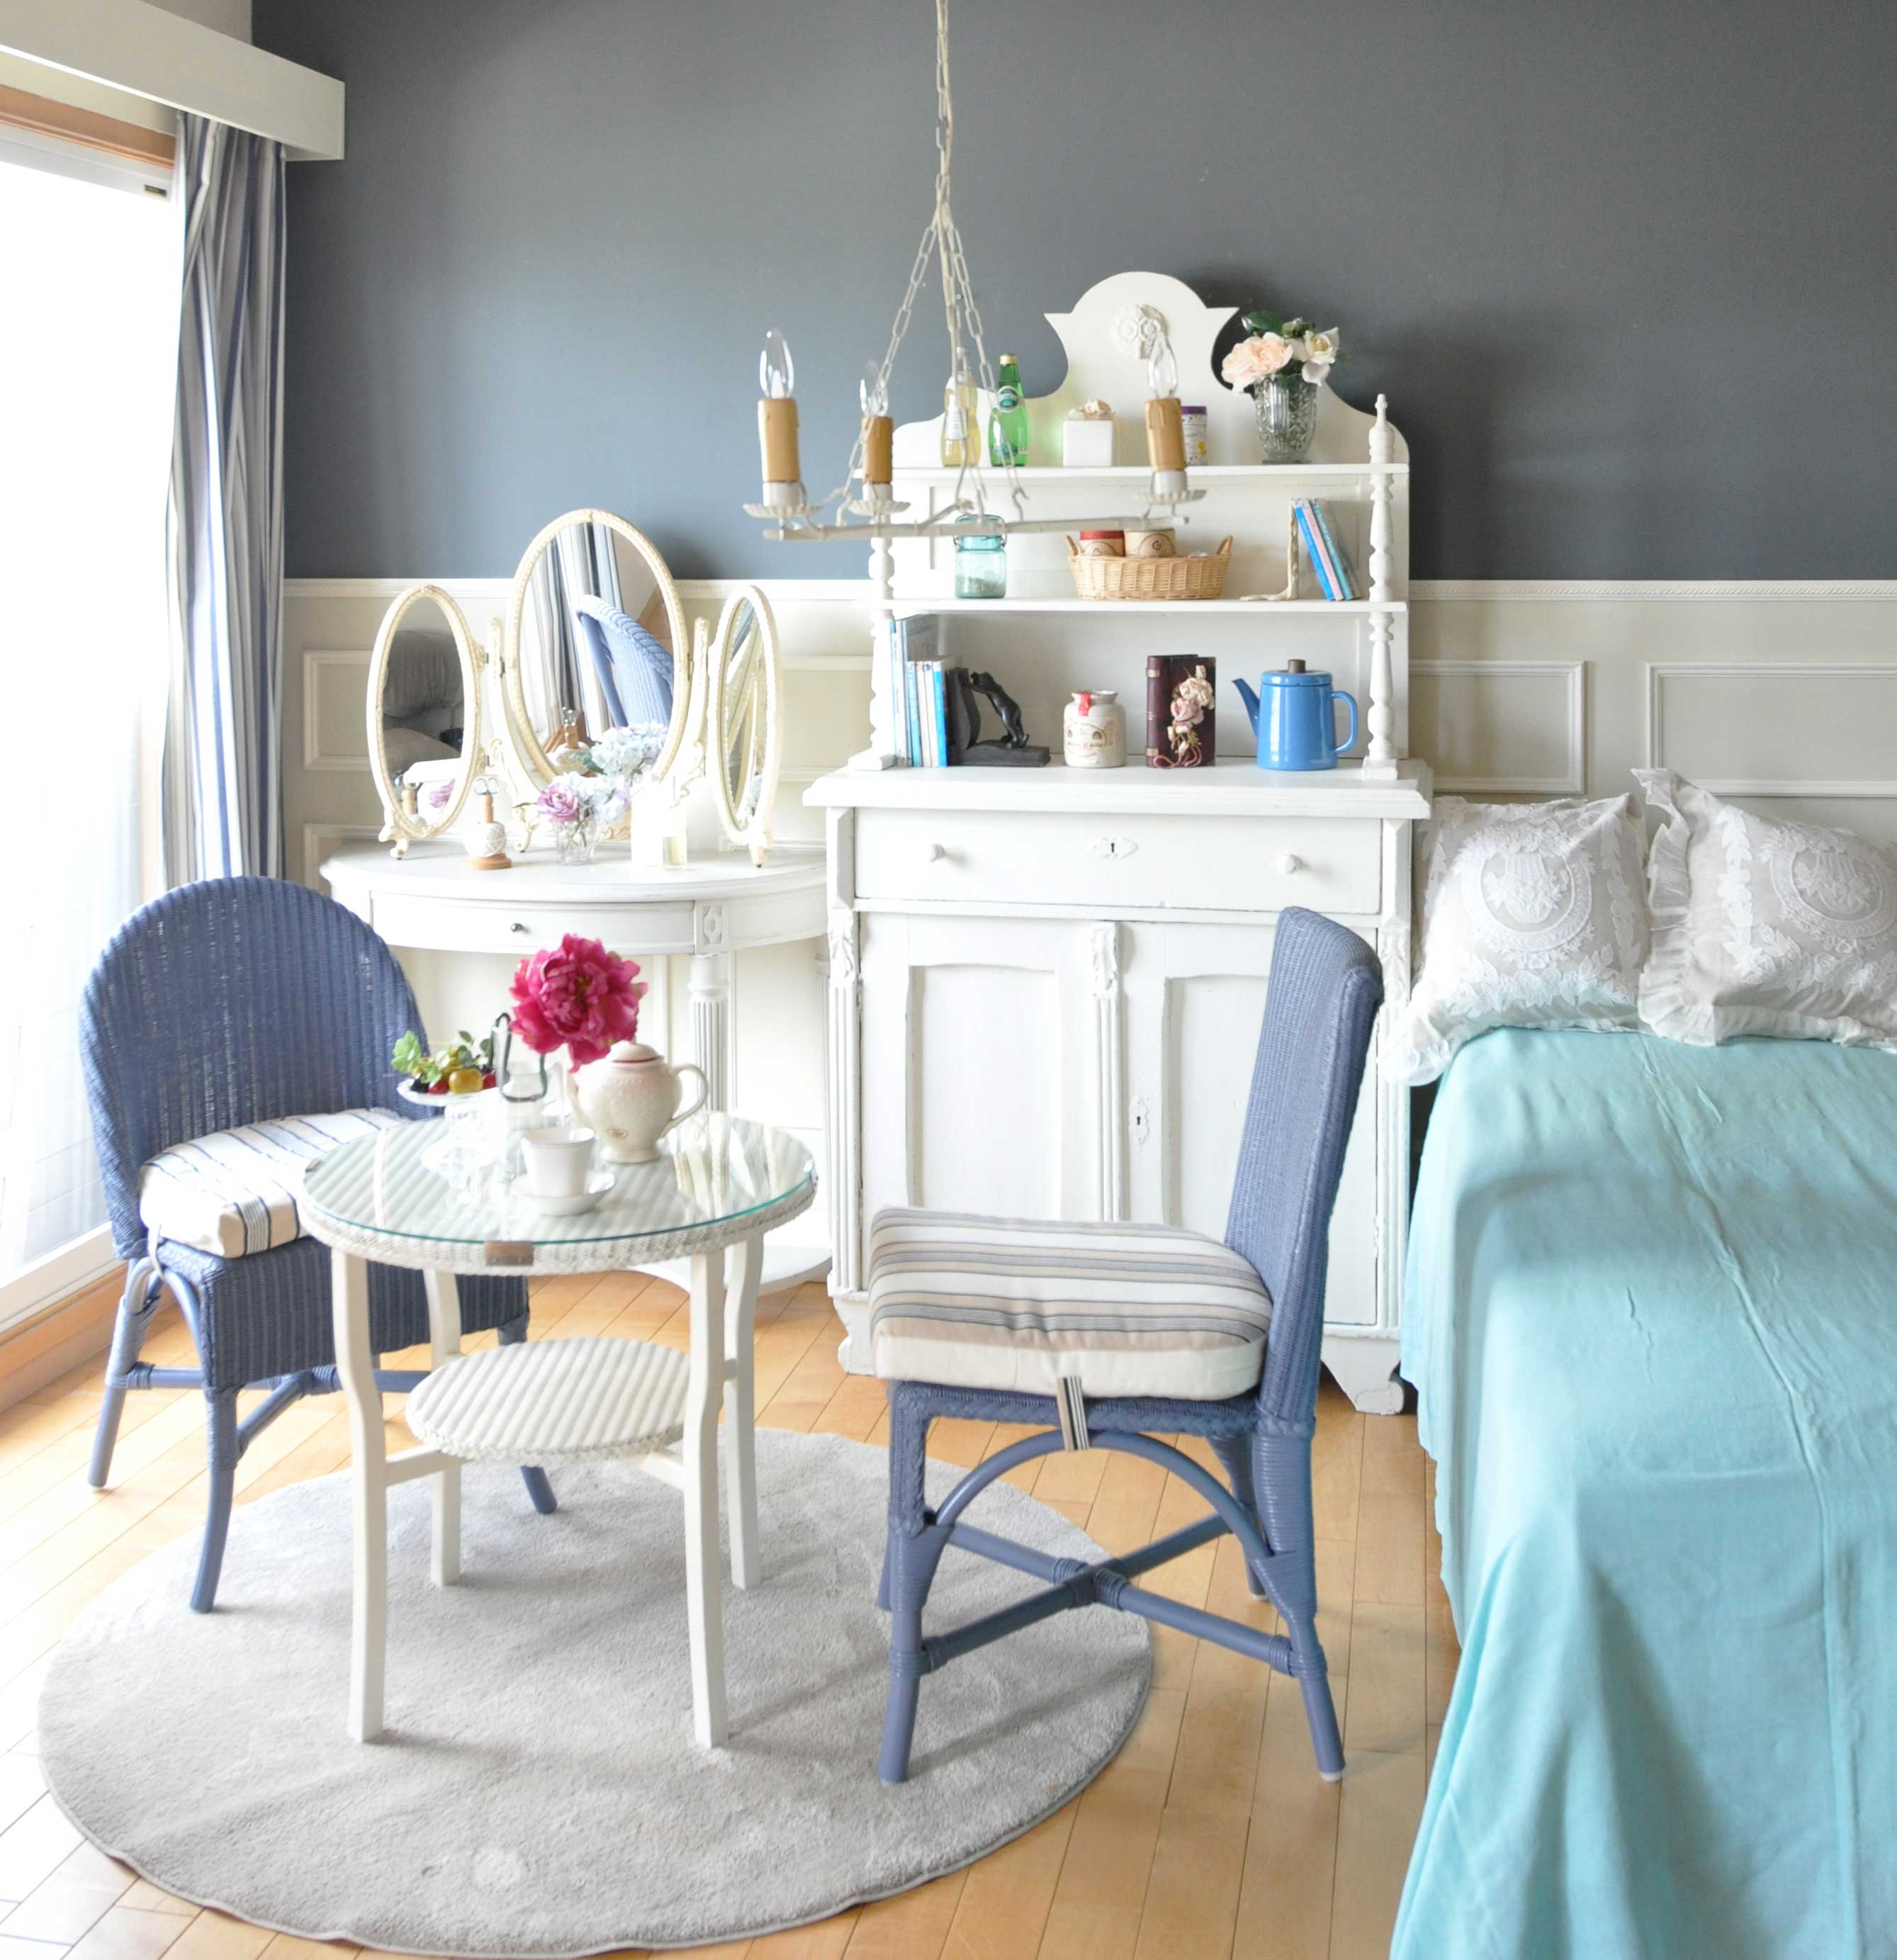 フレンチエレガントの | 白とブルーとグリーン爽やかな色合わせの寝室